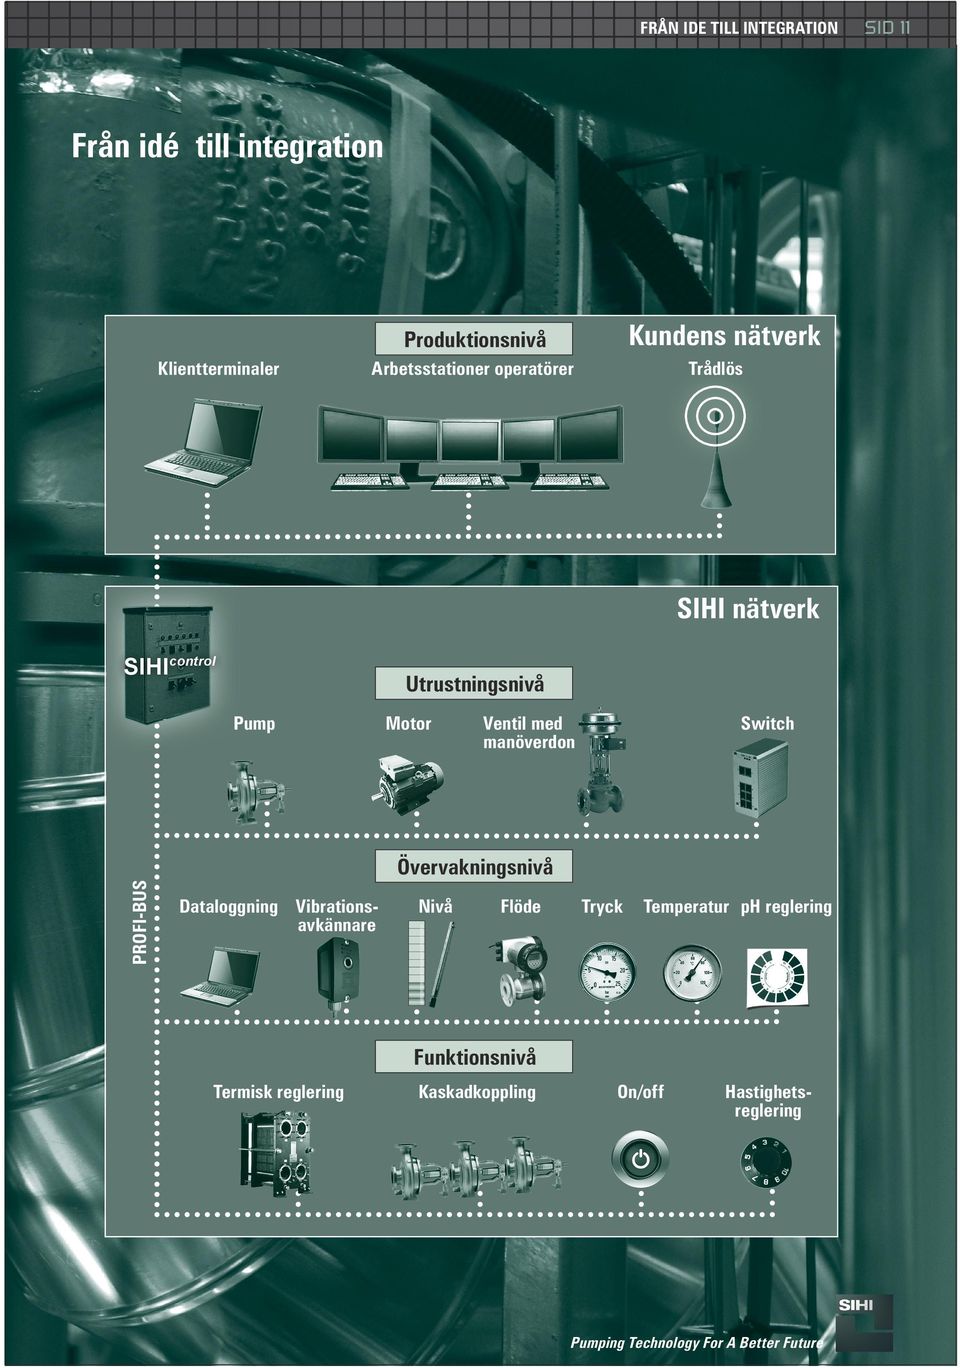 Motor Ventil med manöverdon Switch PROFI-BUS Övervakningsnivå Dataloggning Vibrationsavkännare Nivå